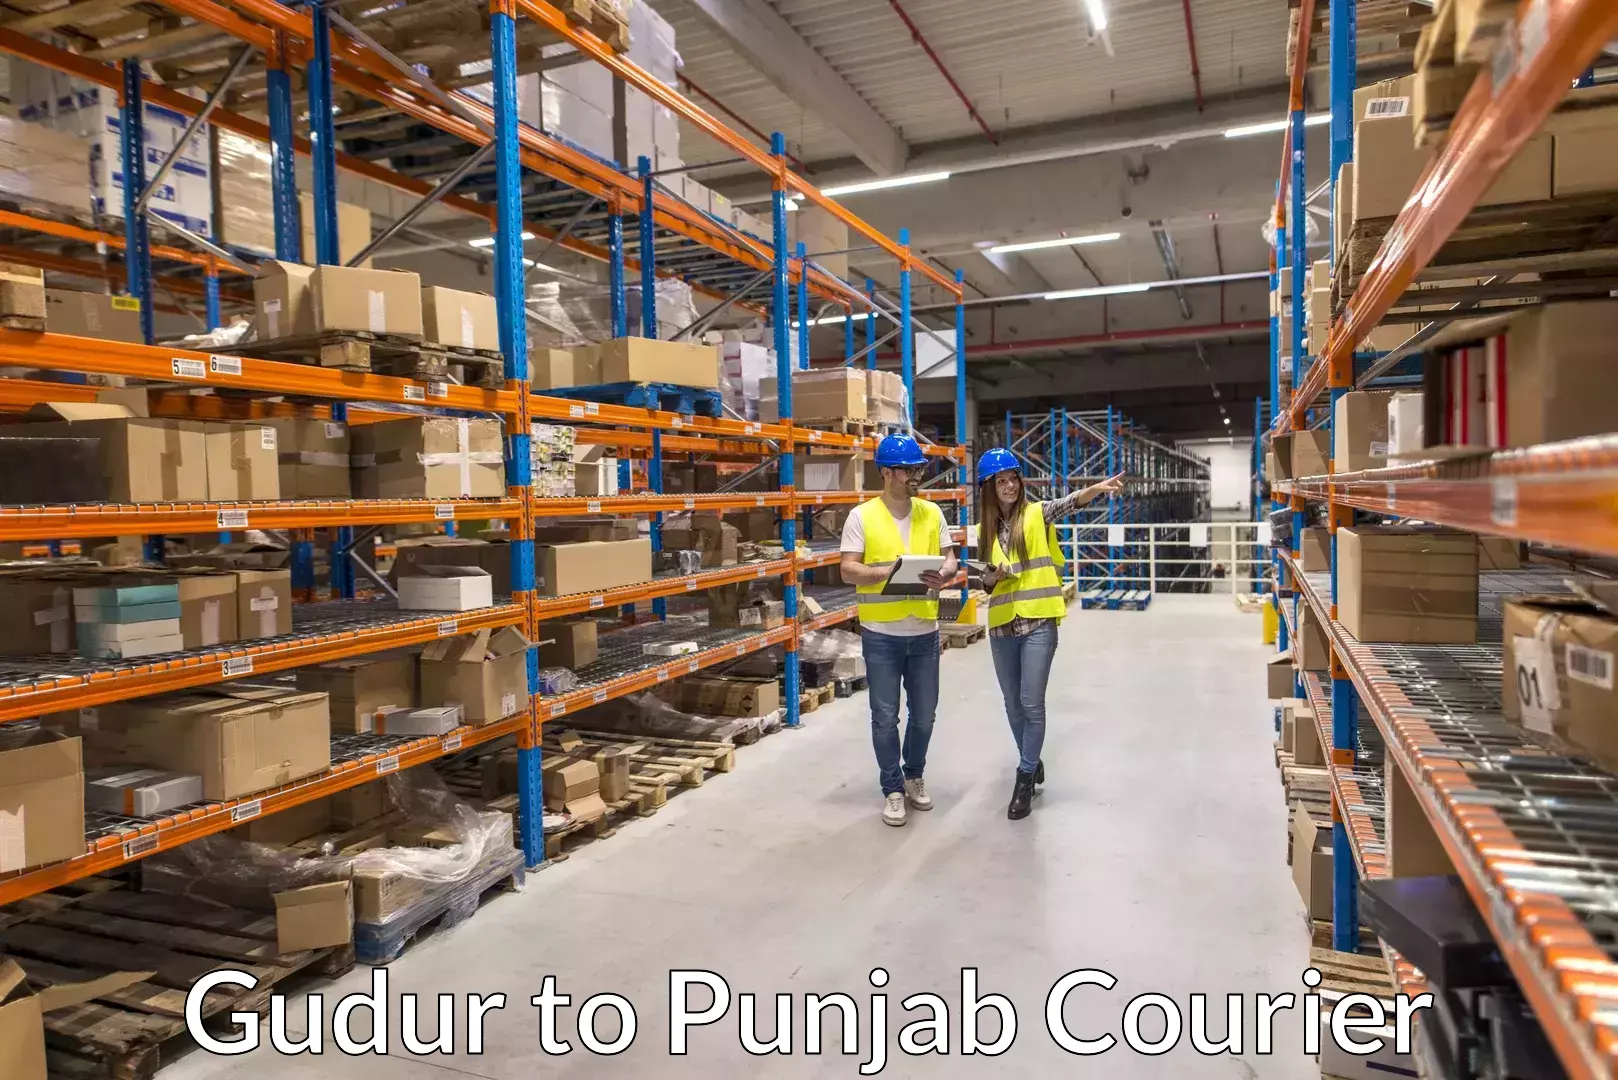 Furniture transport experts Gudur to Punjab